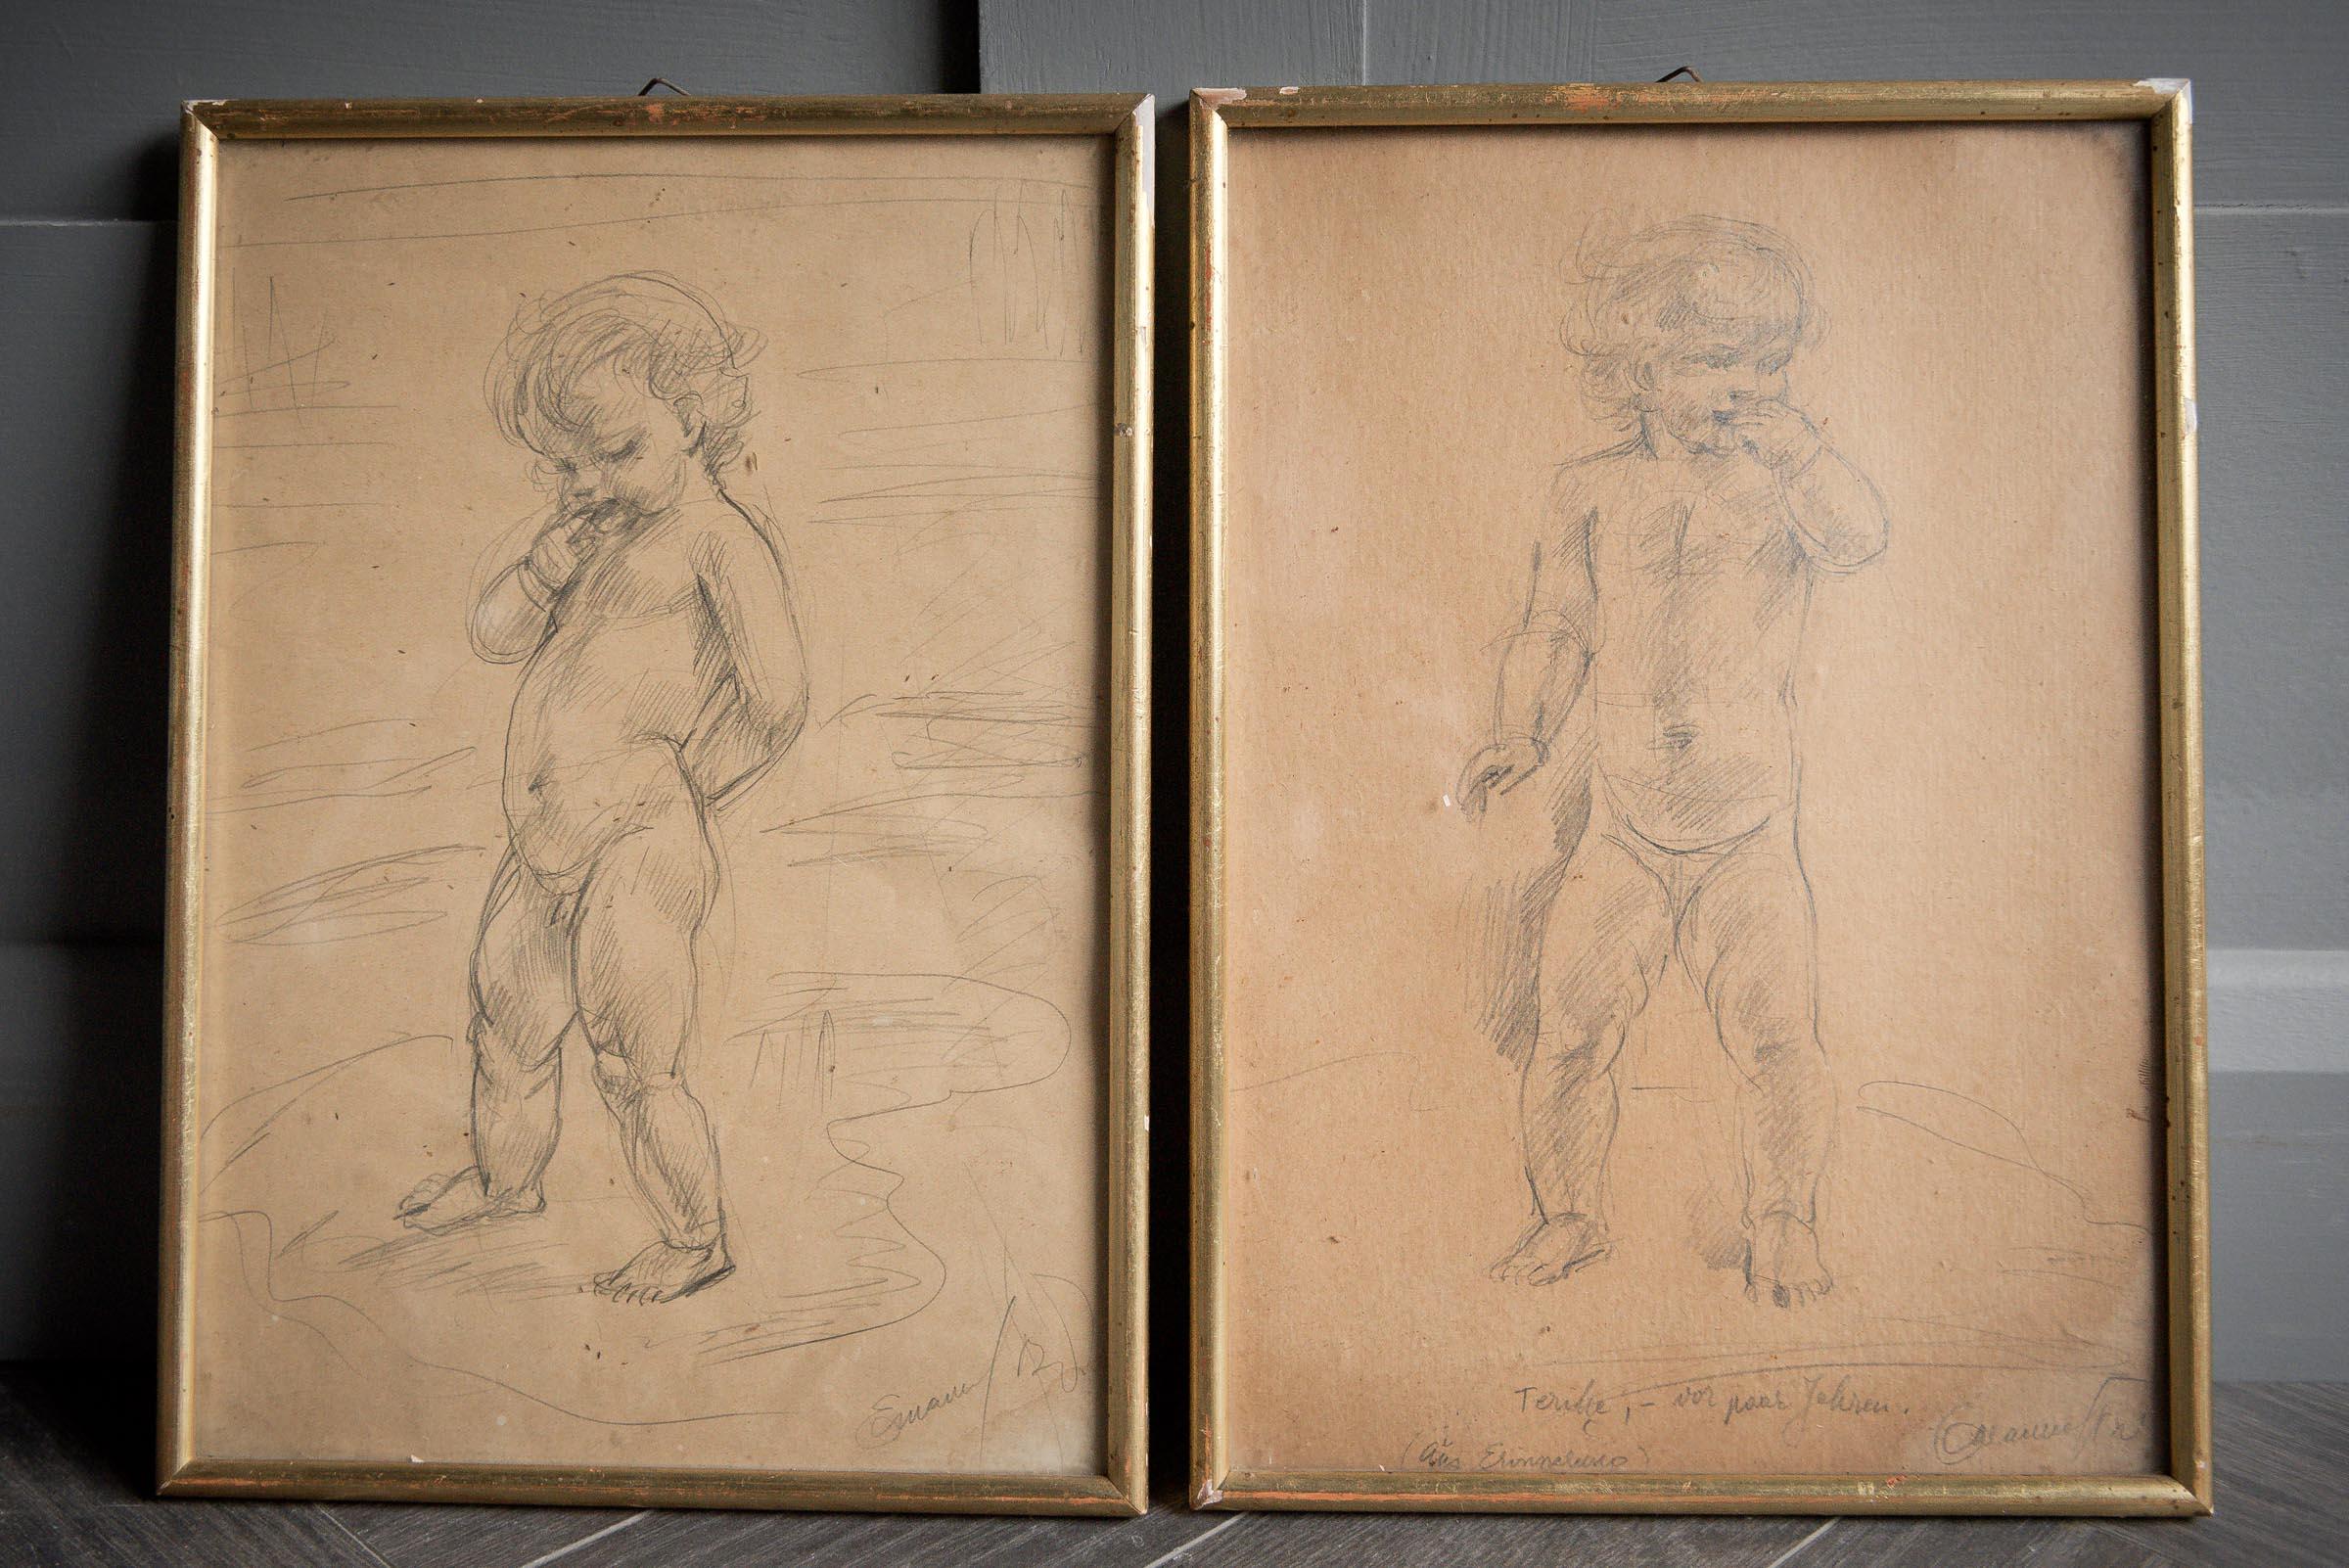 Duo de dessins au crayon encadrés représentant un jeune garçon et une jeune fille.